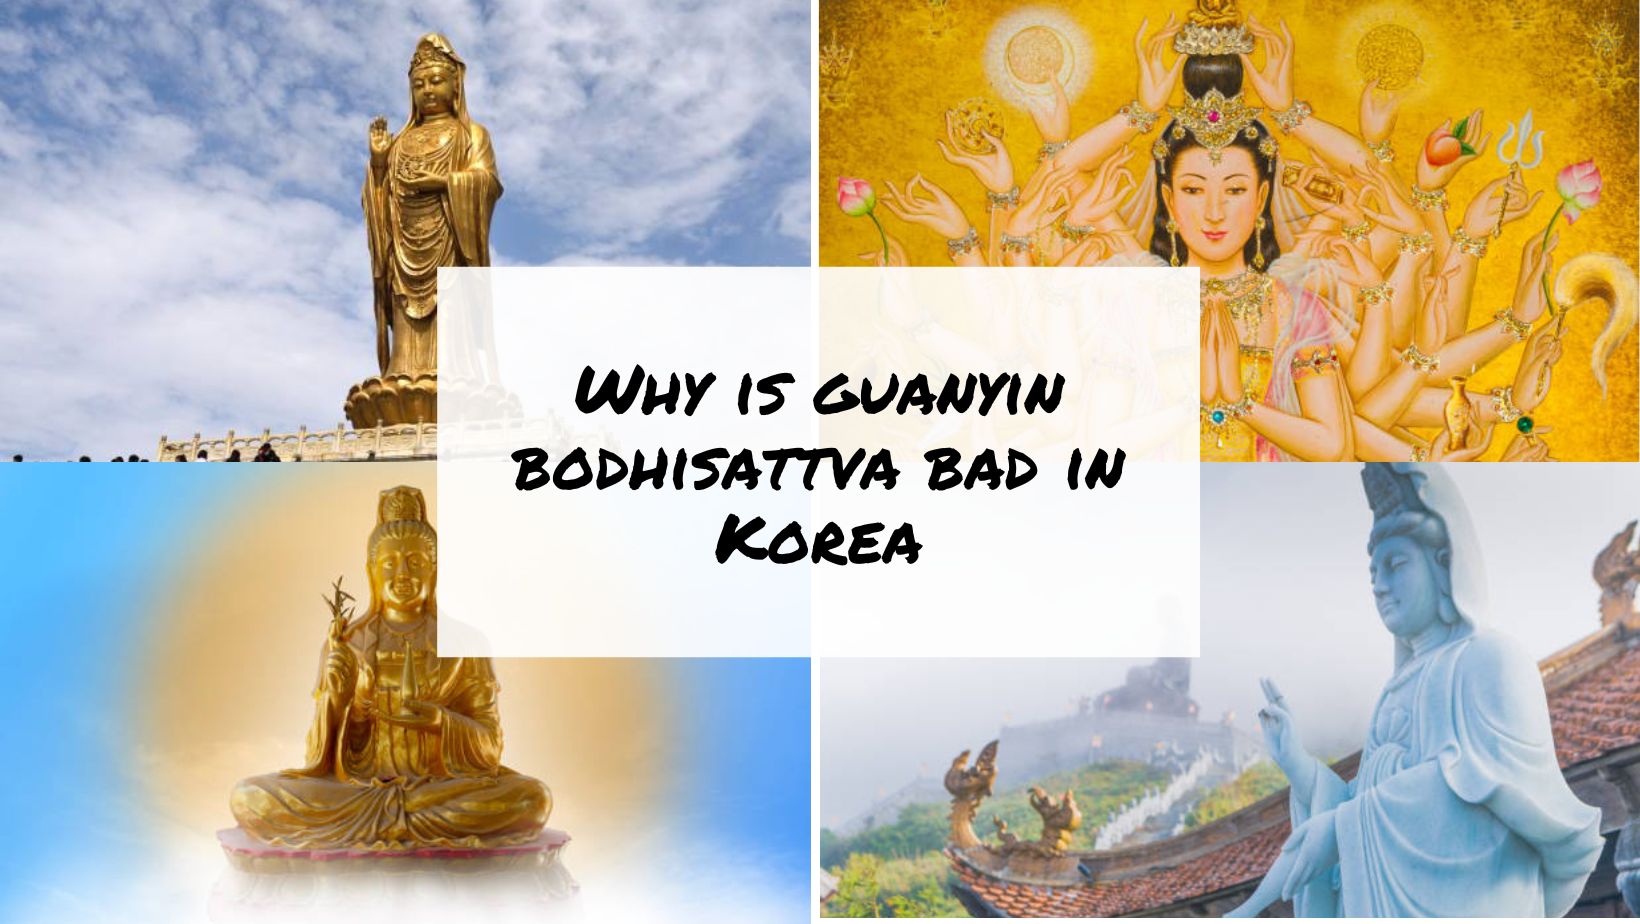 Why is guanyin bodhisattva bad in Korea